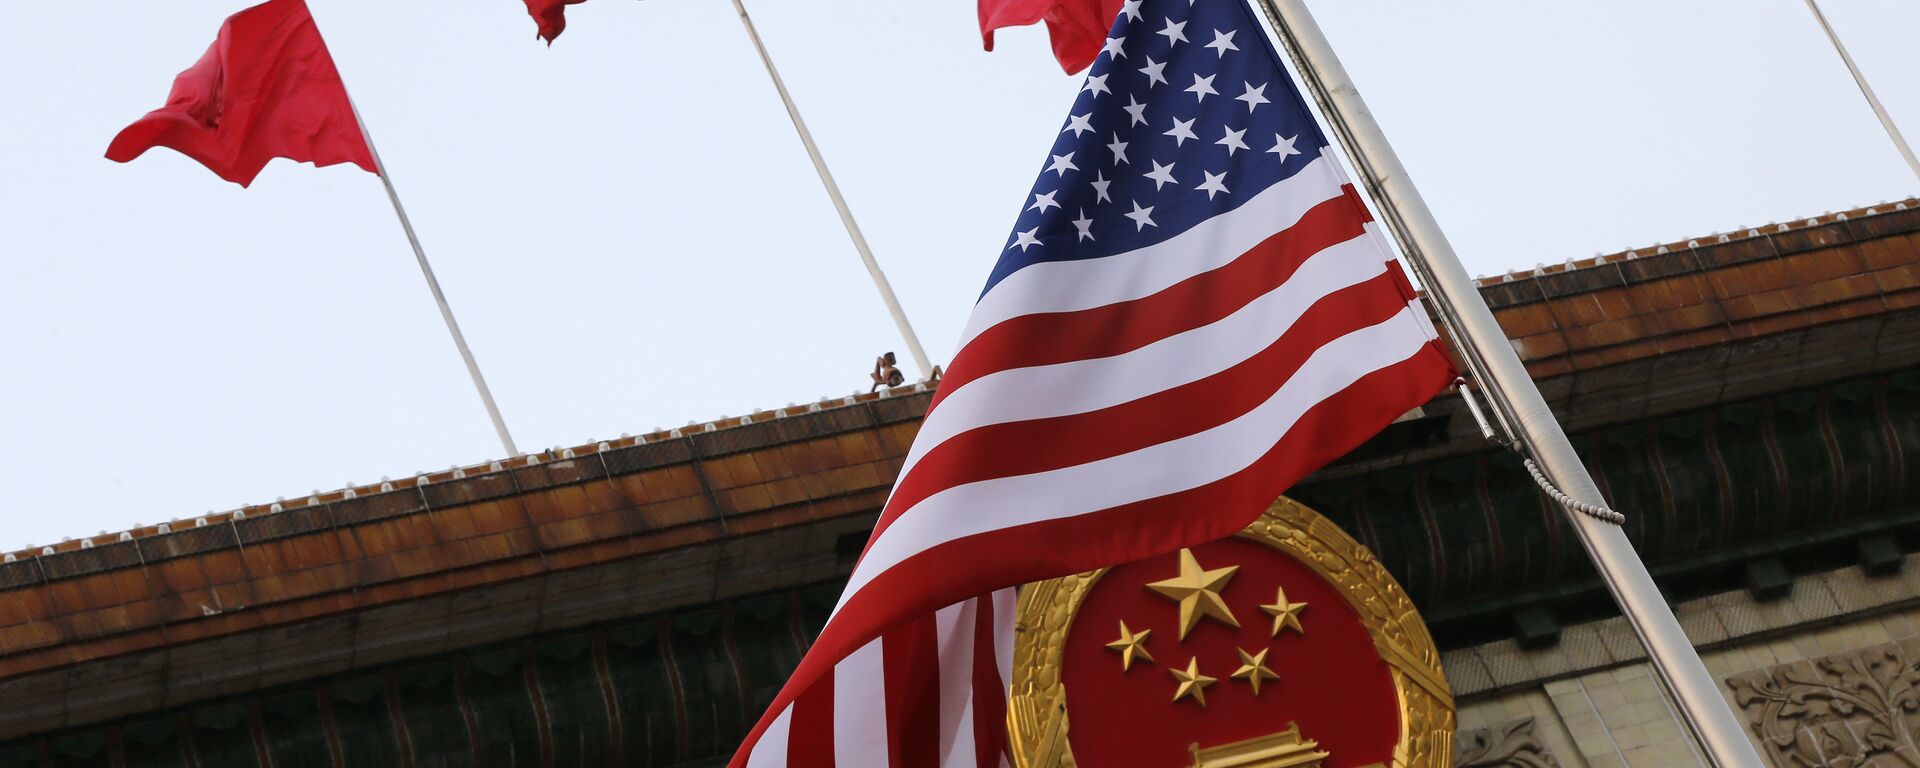 Флаги США и Китая во время визита Дональда Трампа в Пекин 9 ноября 2017 года - Sputnik Latvija, 1920, 02.06.2021